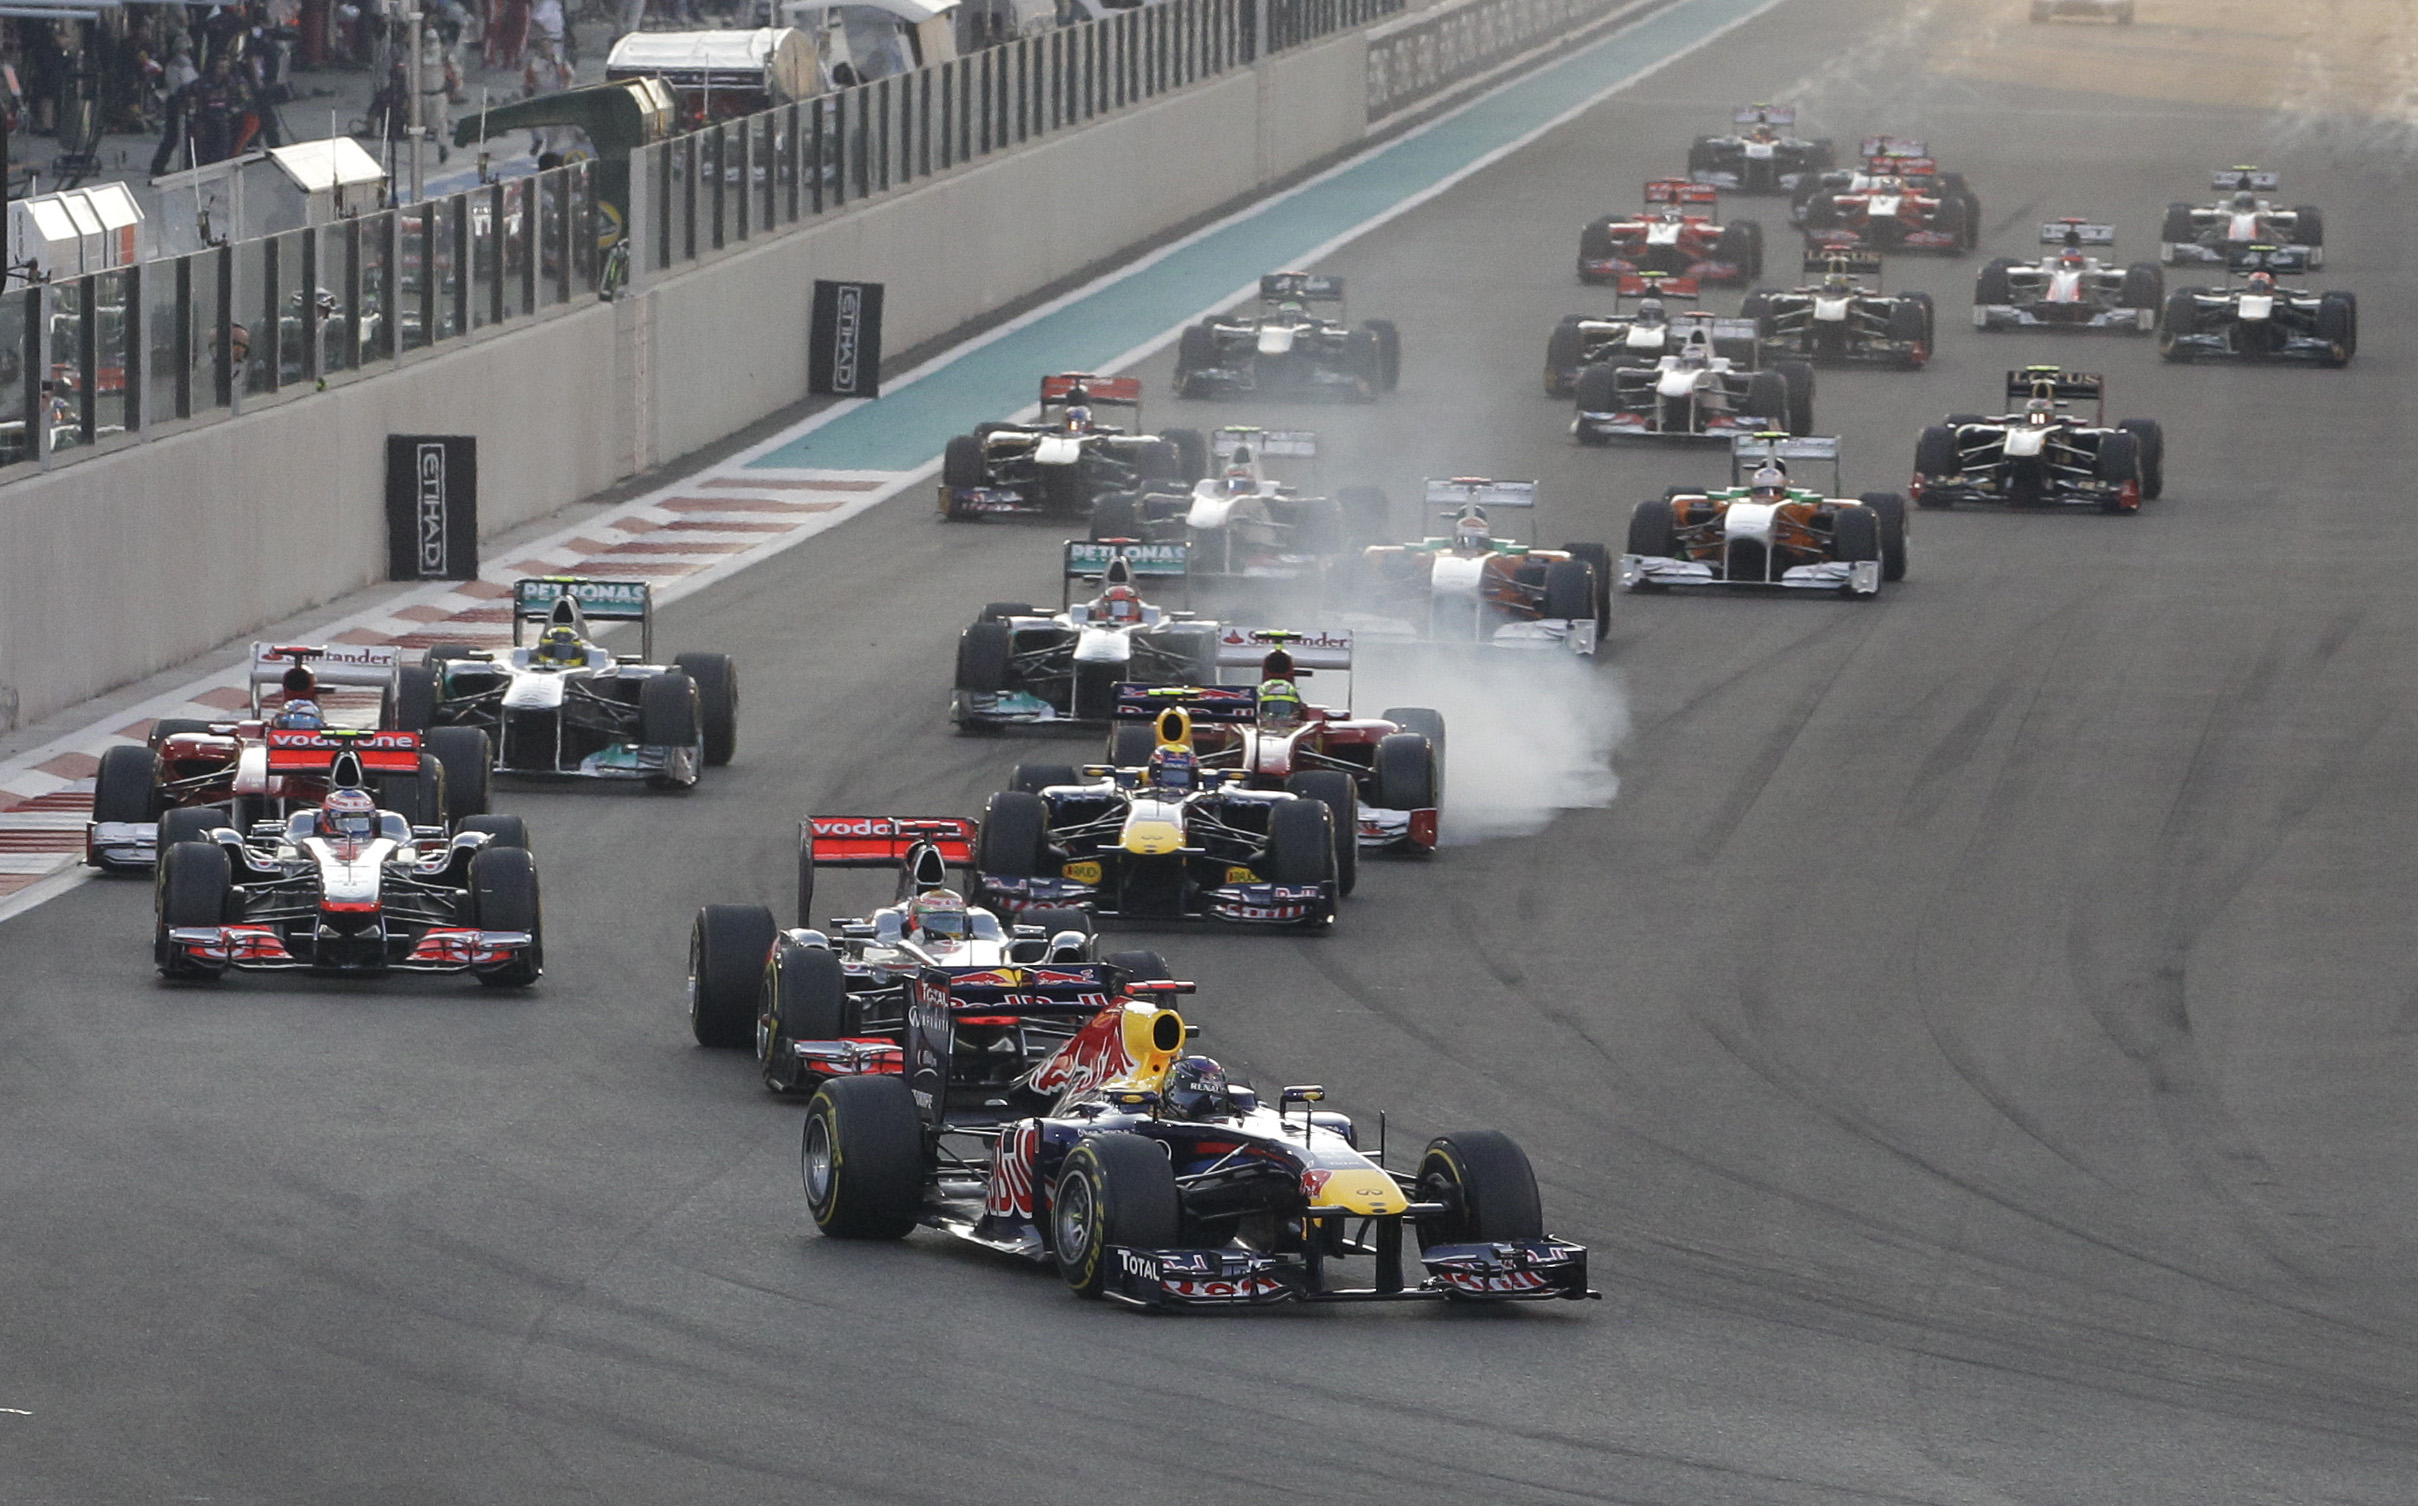 Fernando Alonso, Jenson Button, Mark Webber, Red Bull, Nigel Mansell, Abu Dhabi, Lewis Hamilton, Sebastian Vettel, Formel 1